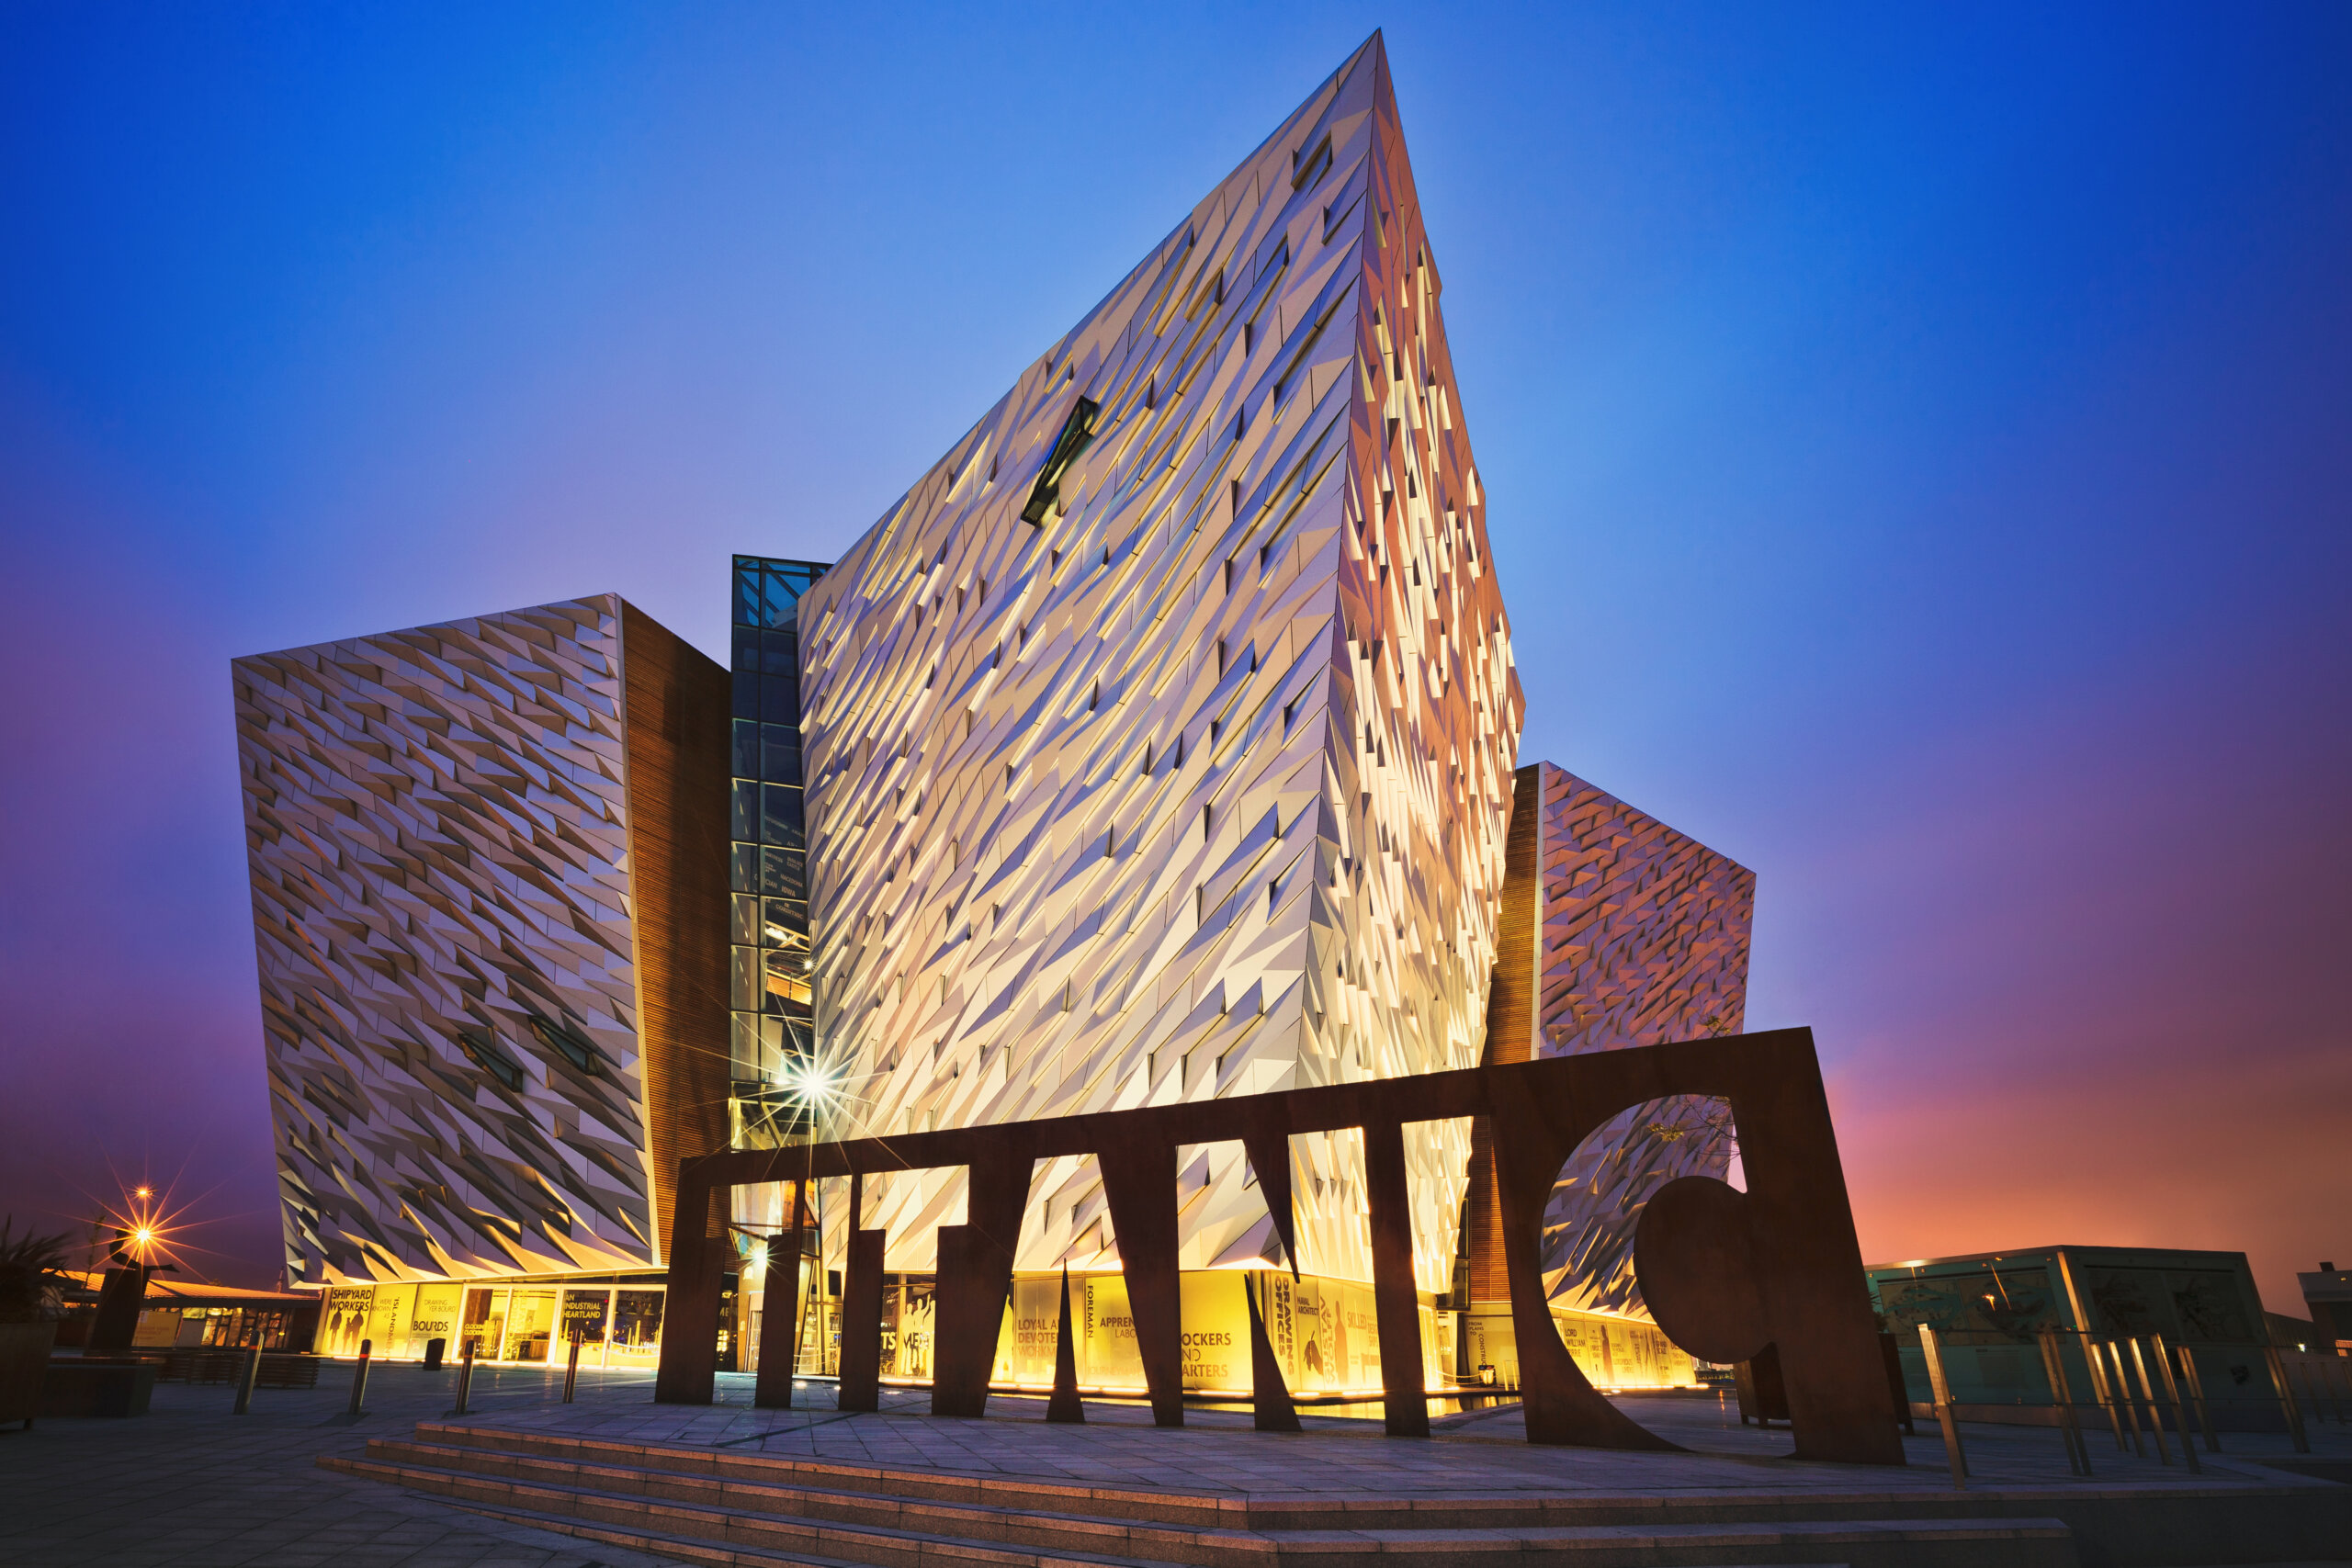 BELFAST, IRLANDIA PÓŁNOCNA - 28 CZERWCA 2017 R: Zachód słońca nad Titanic Belfast - muzeum, atrakcja turystyczna i pomnik morskiego dziedzictwa Belfastu na terenie dawnej stoczni Harland and Wolff.